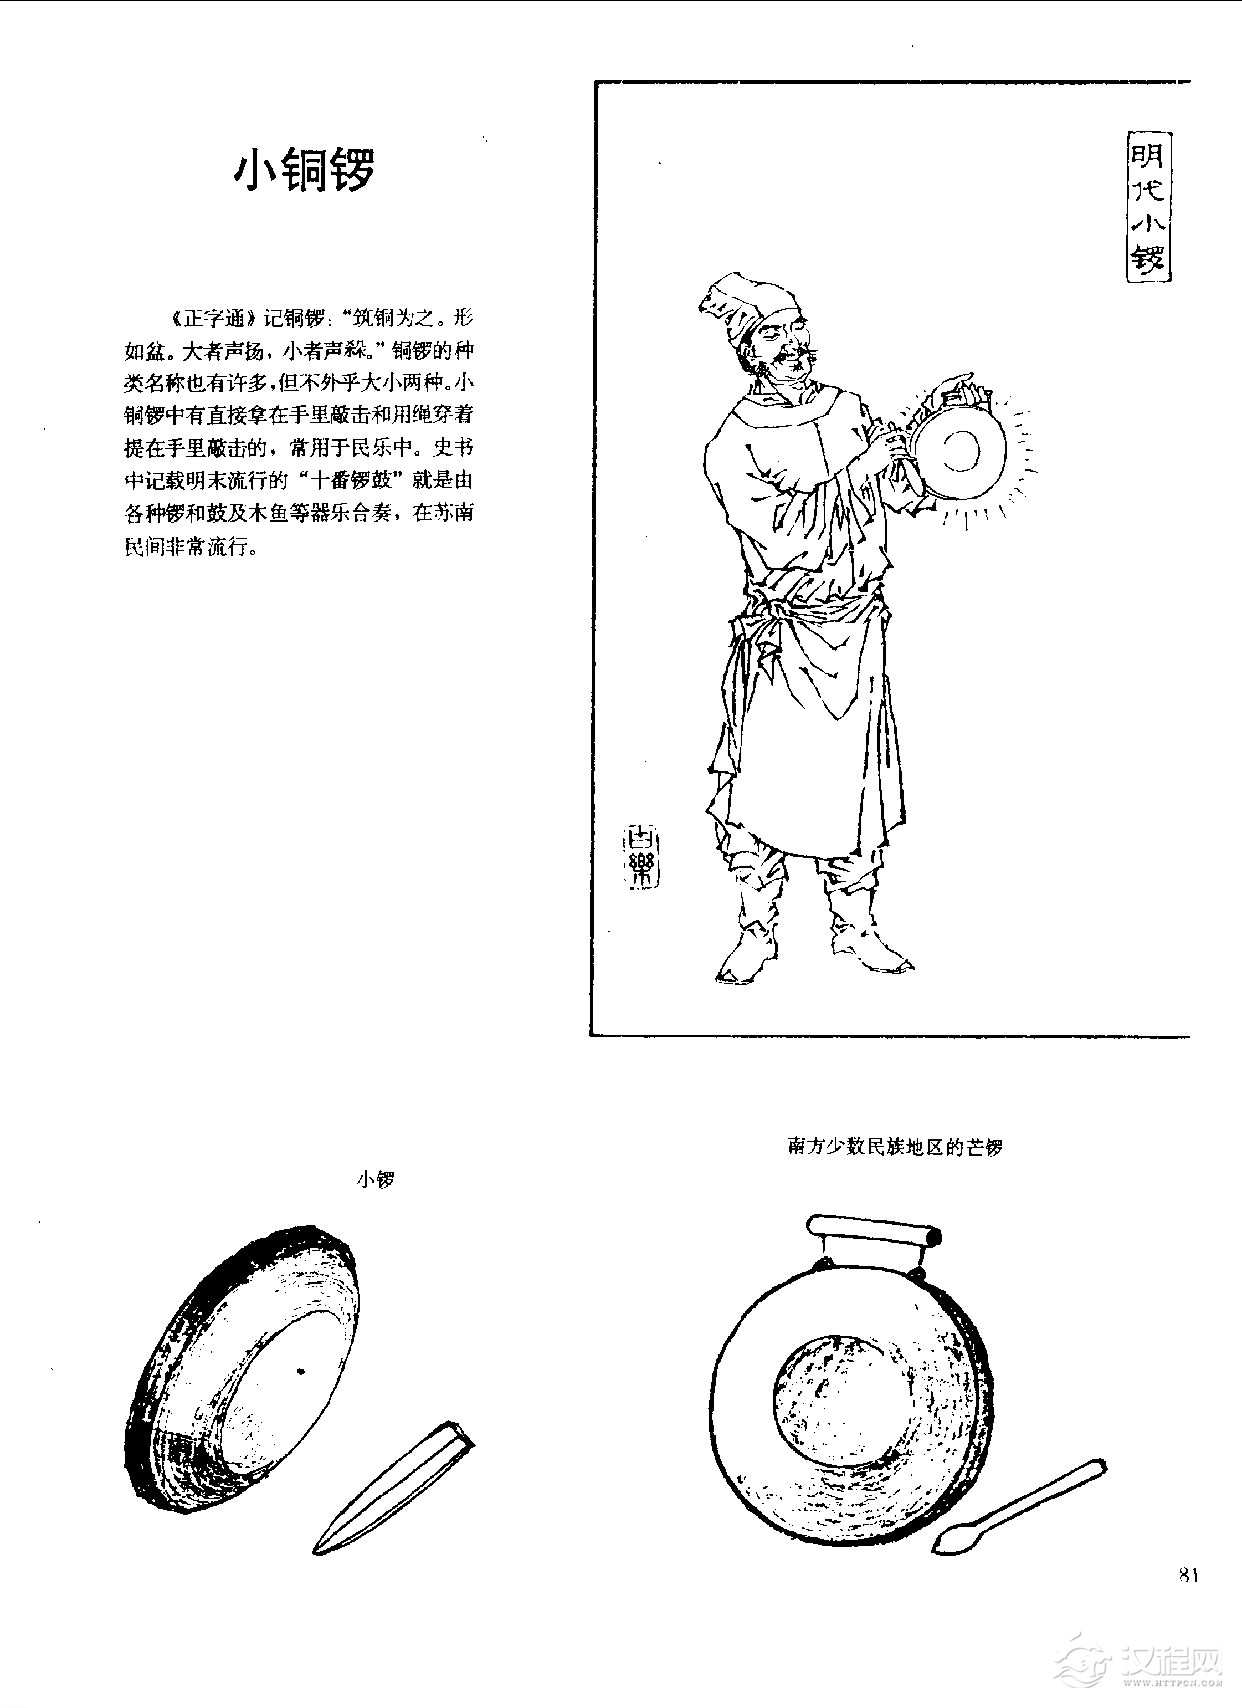 中国古代乐器《小铜锣》